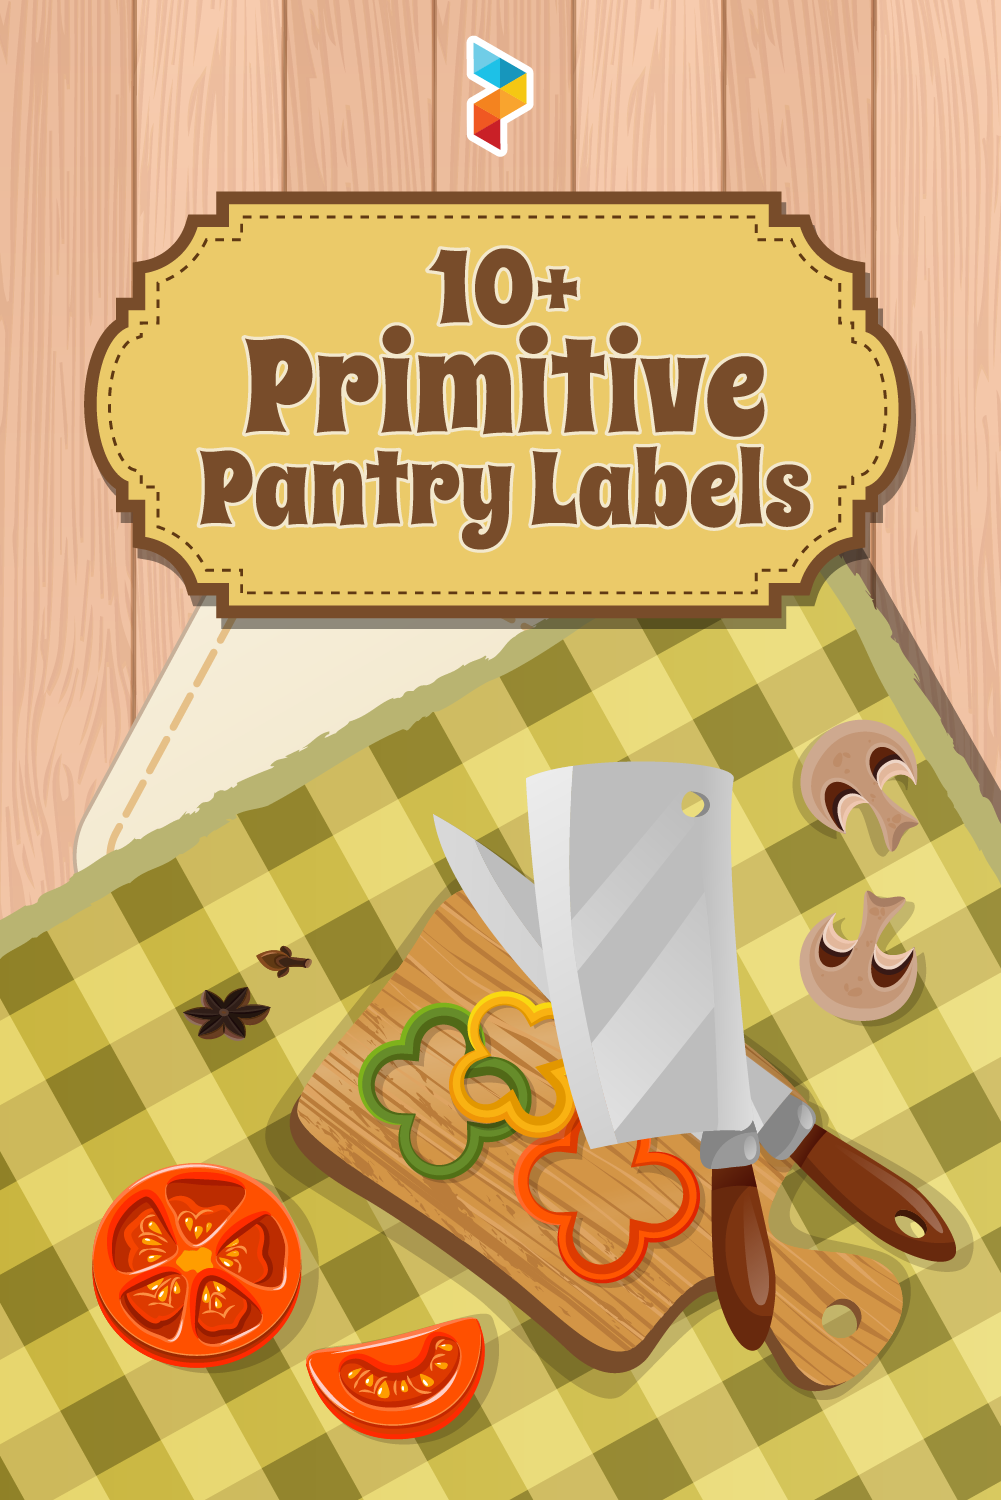 Primitive Pantry Labels